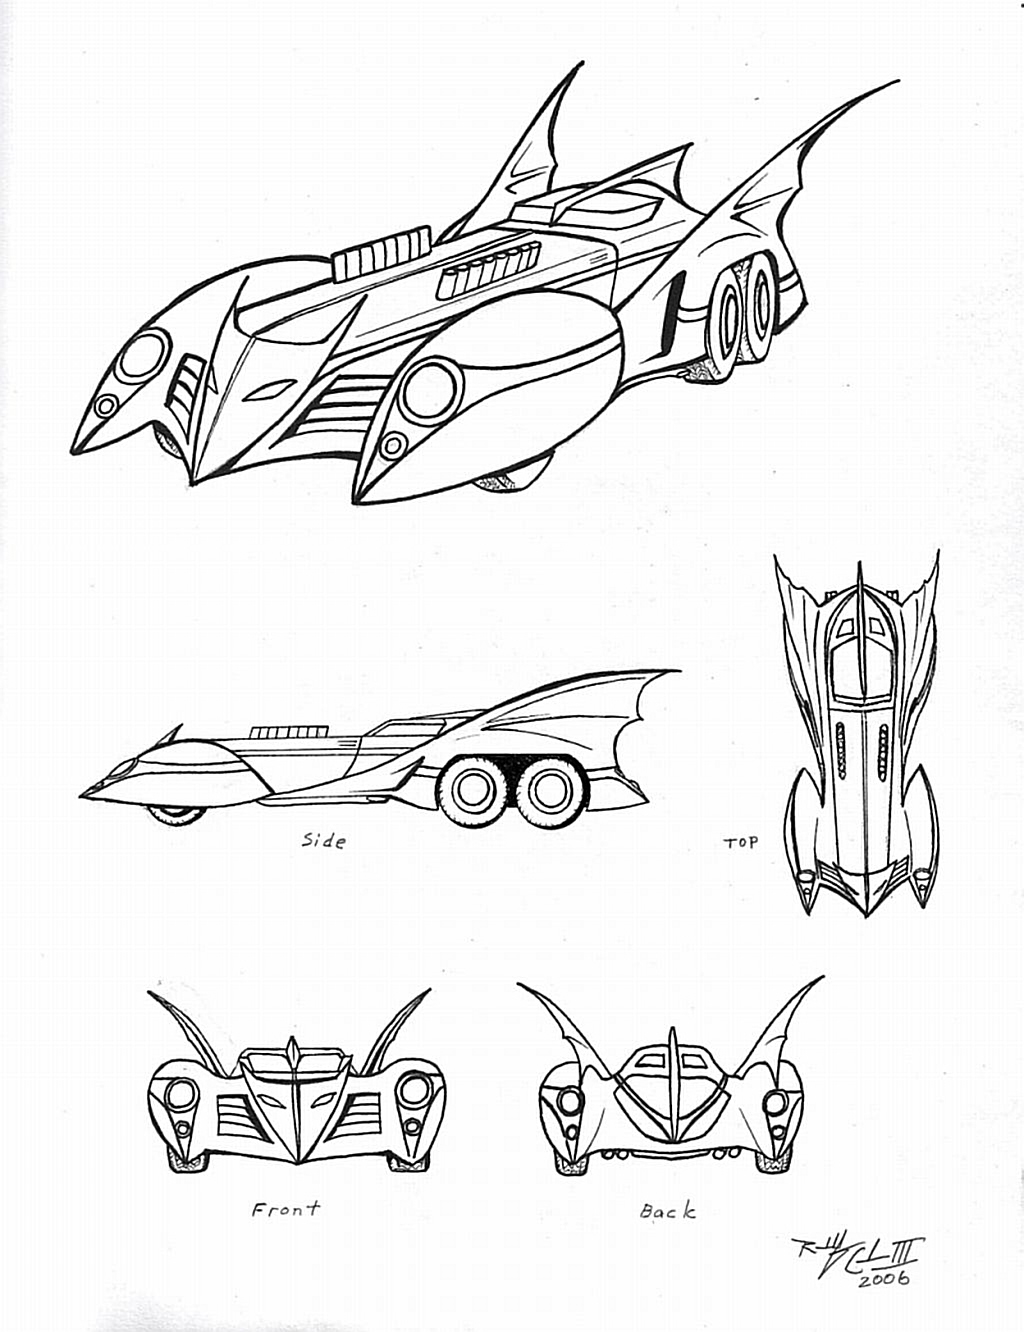 Batman Car Drawing at GetDrawings | Free download